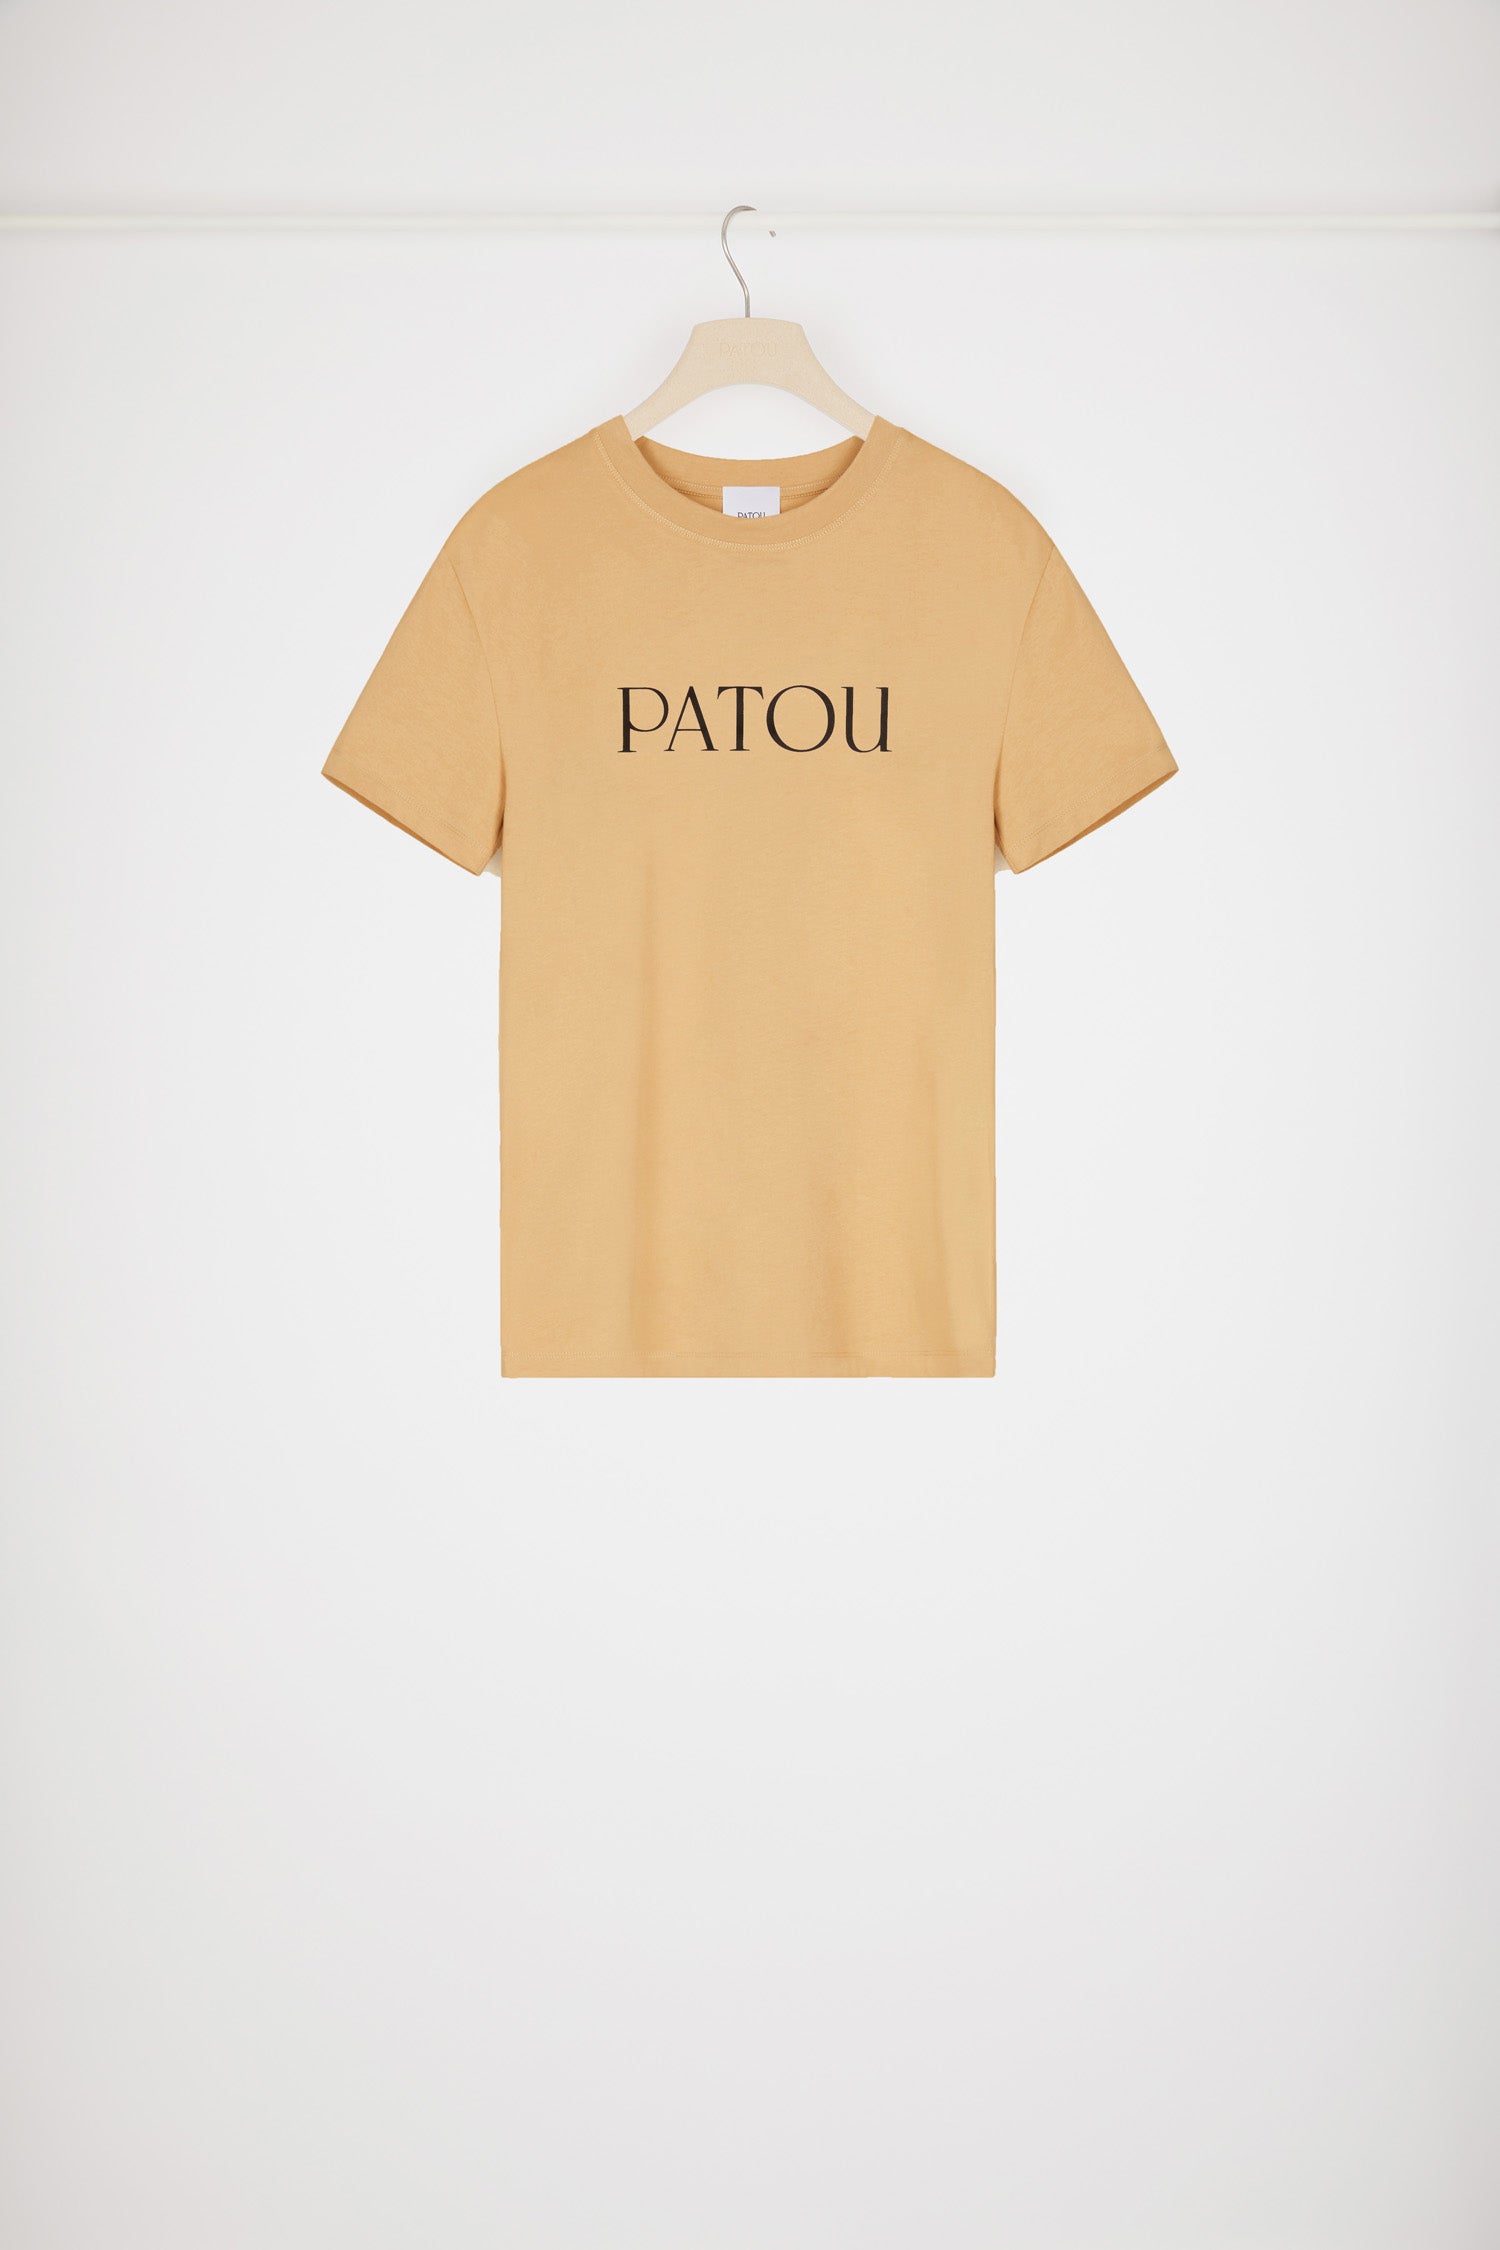 オーガニックコットン パトゥロゴTシャツ - Chestnut - XS